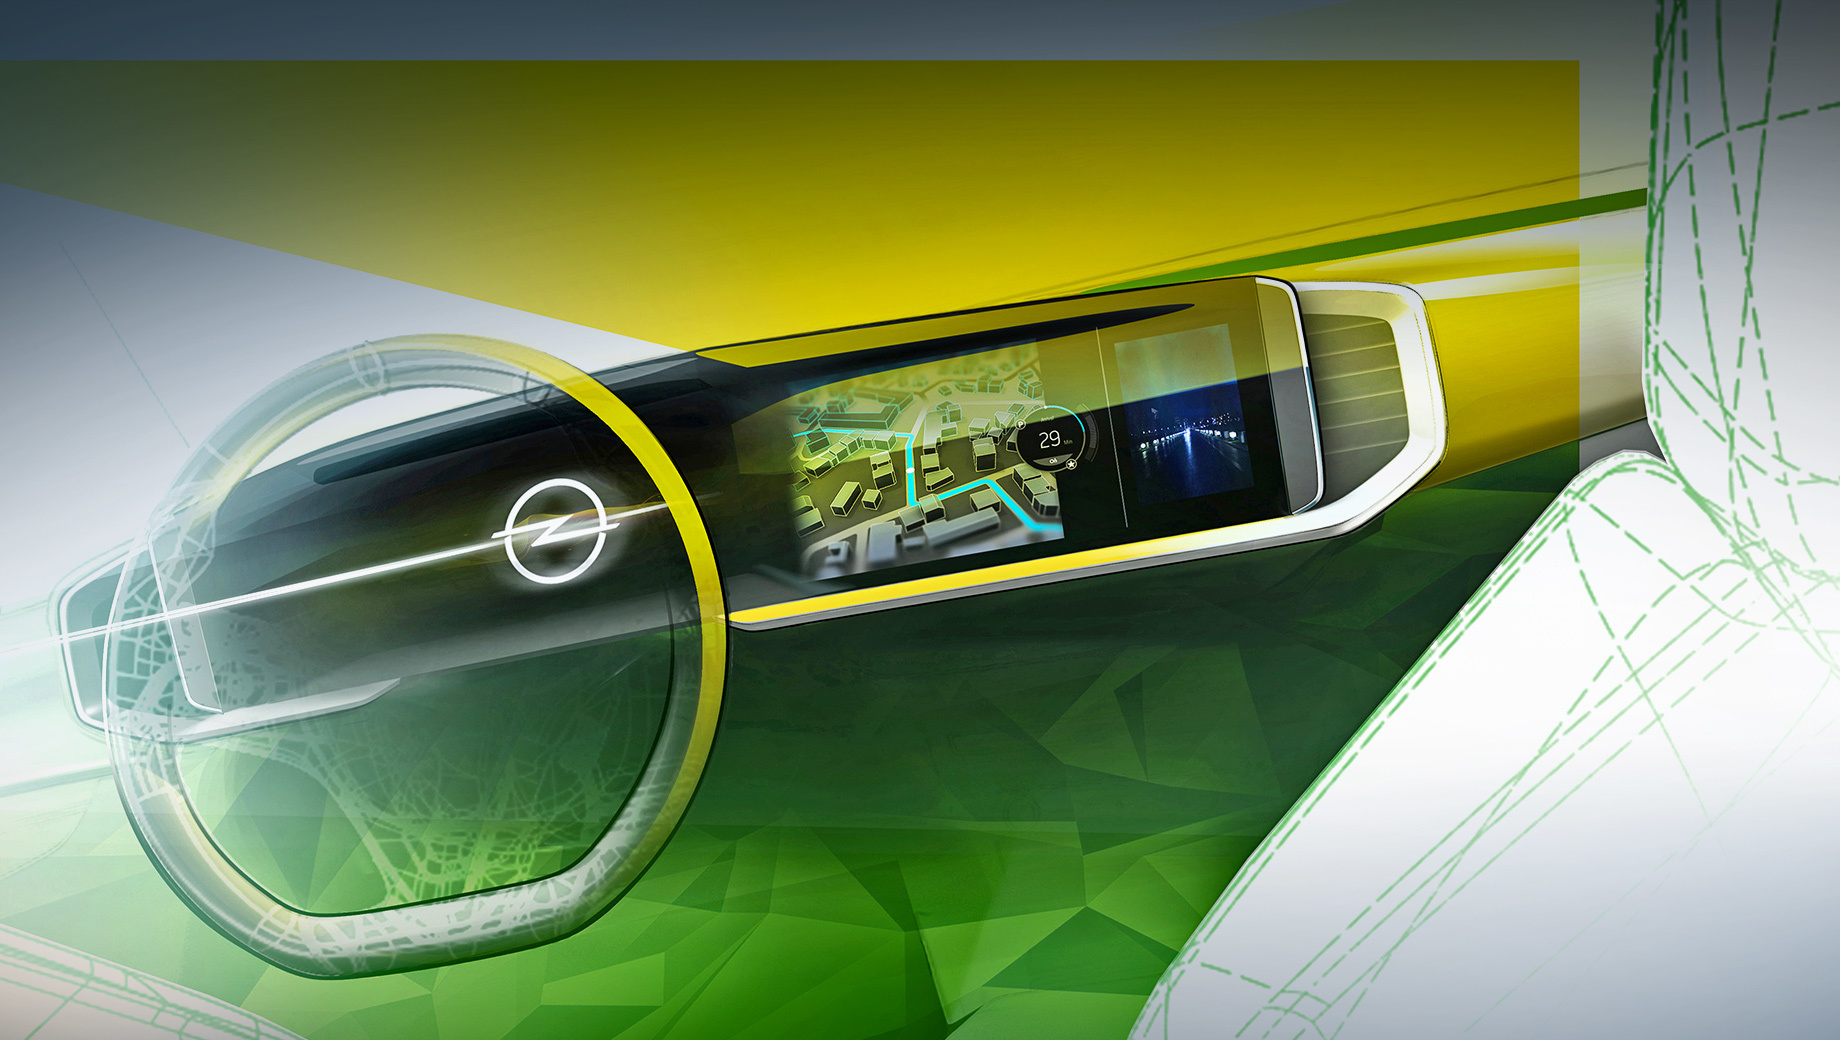 Opel mokka. «Чистая панель», собирающая цифровую приборку и центральный дисплей под единым стеклом, была заявлена два года назад концептом Opel GT X. Она считается средством «визуальной детоксикации», сводящим к минимуму количество физических кнопок и просто лишних элементов.